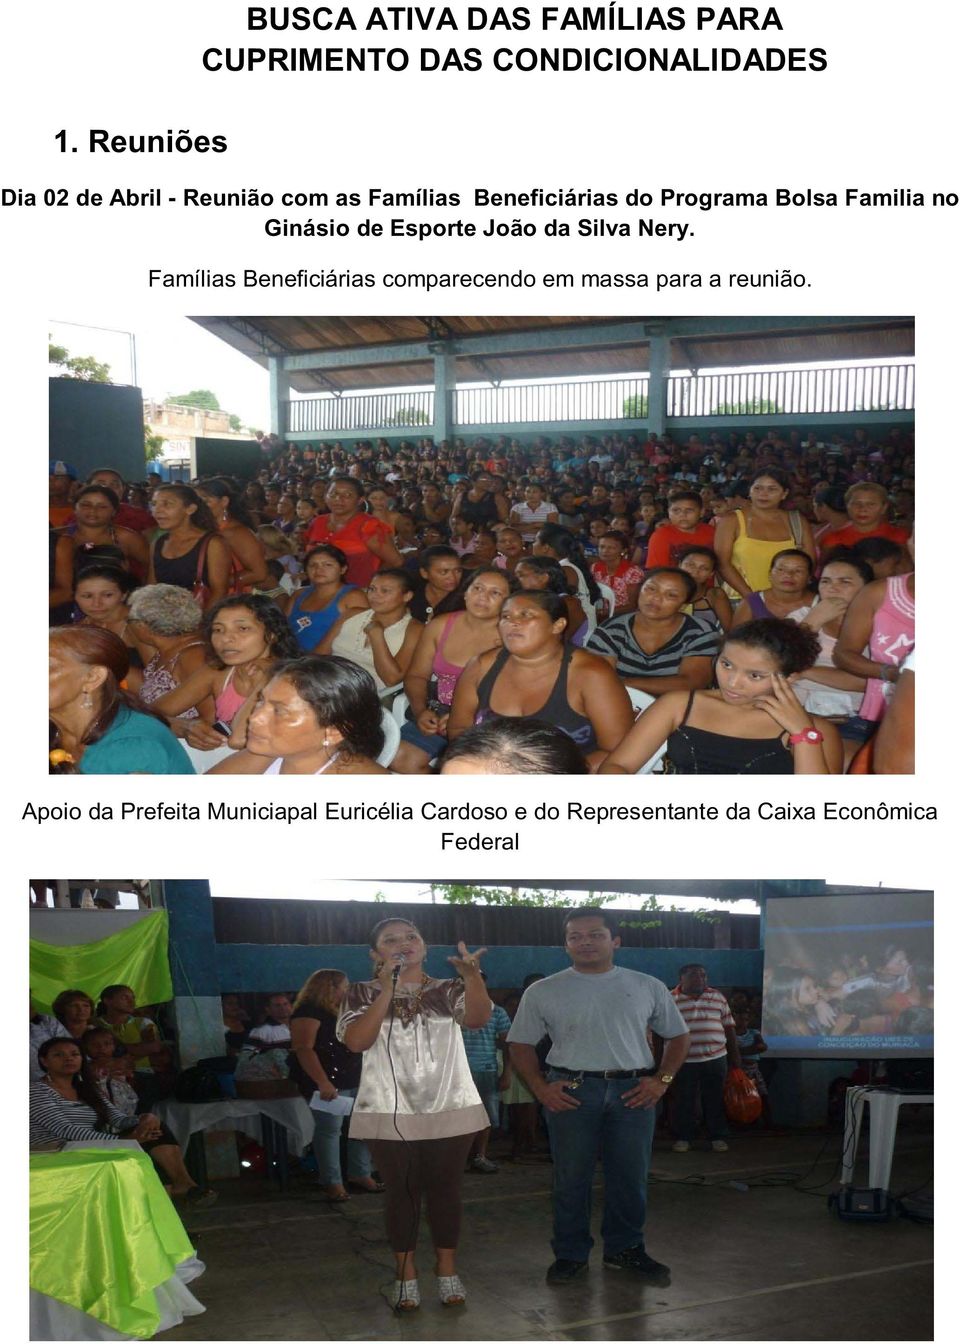 Esporte João da Silva Nery. Famílias Beneficiárias comparecendo em massa para a reunião.